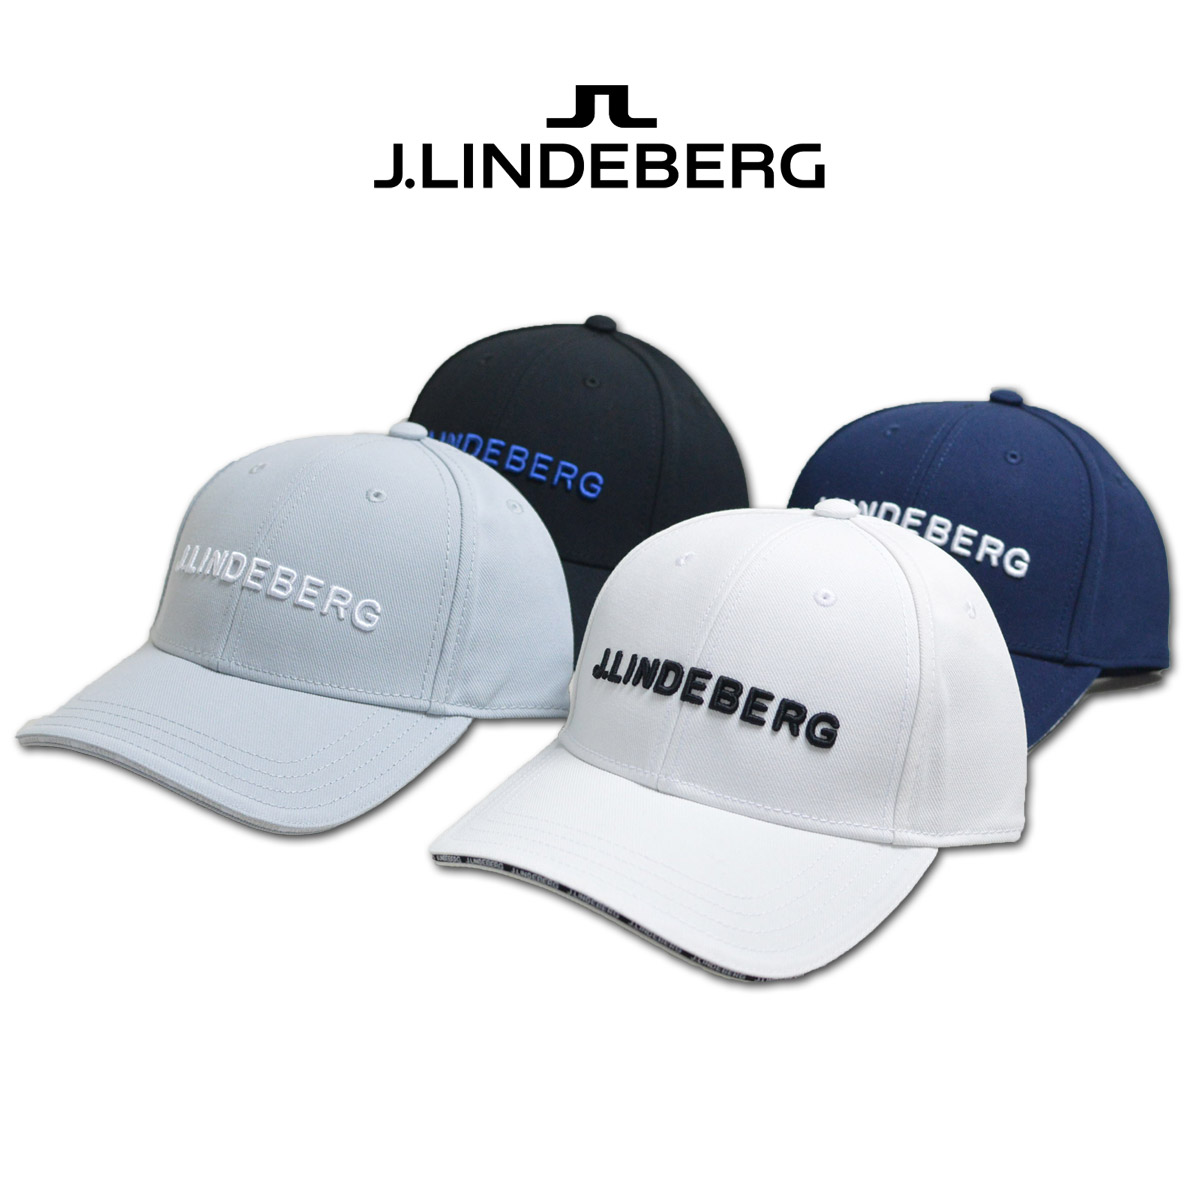 J.リンドバーグ キャップ帽子 メンズ 黒 白 グレー 紺 073-51333 : 073 